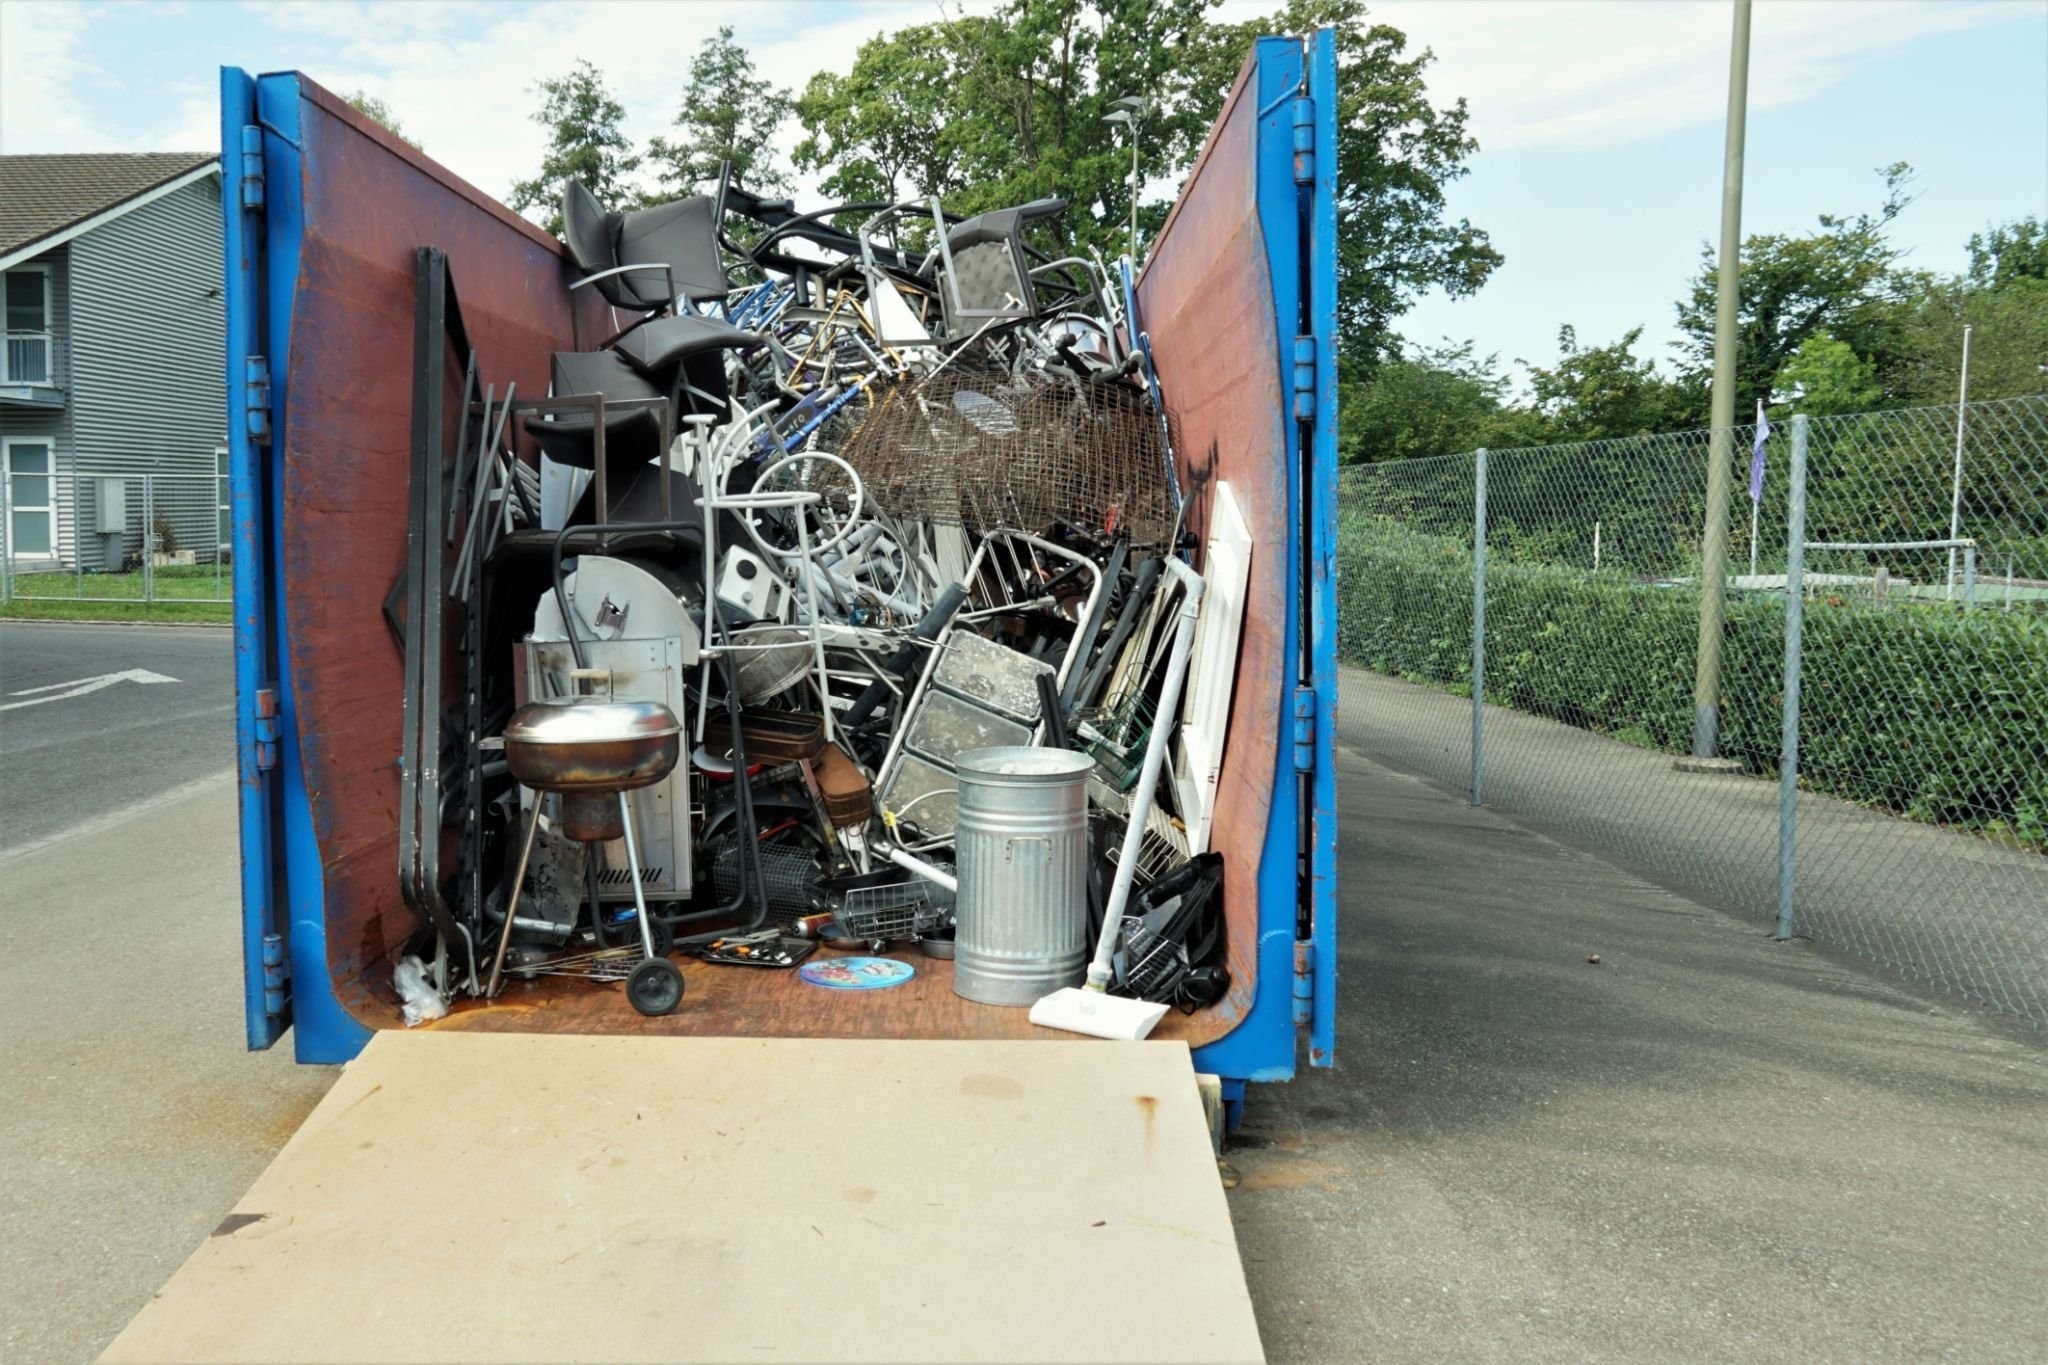 dumpster filled with debris